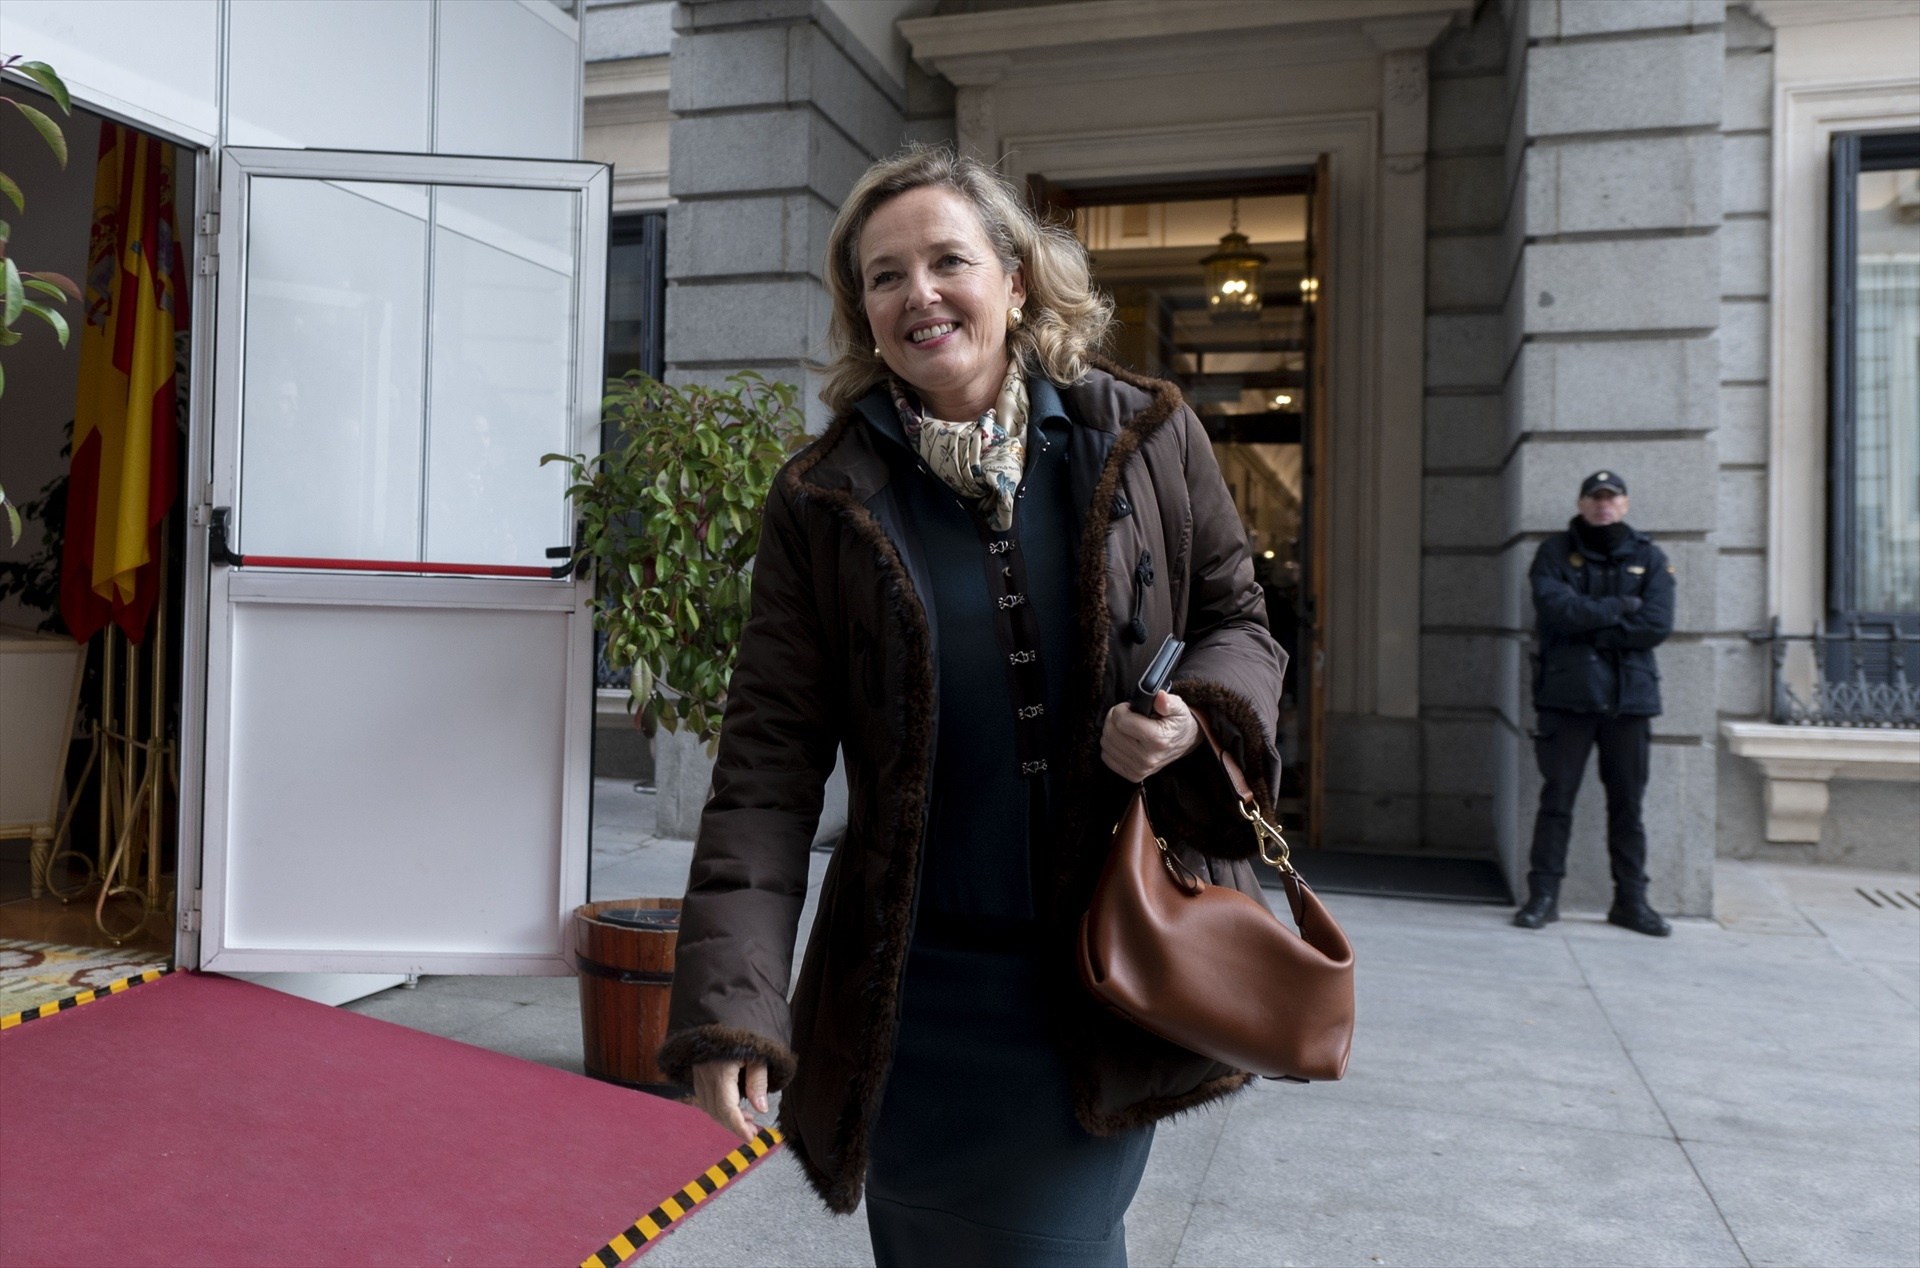 La Unió Europea designa Nadia Calviño com a futura presidenta del Banc Europeu d'Inversions